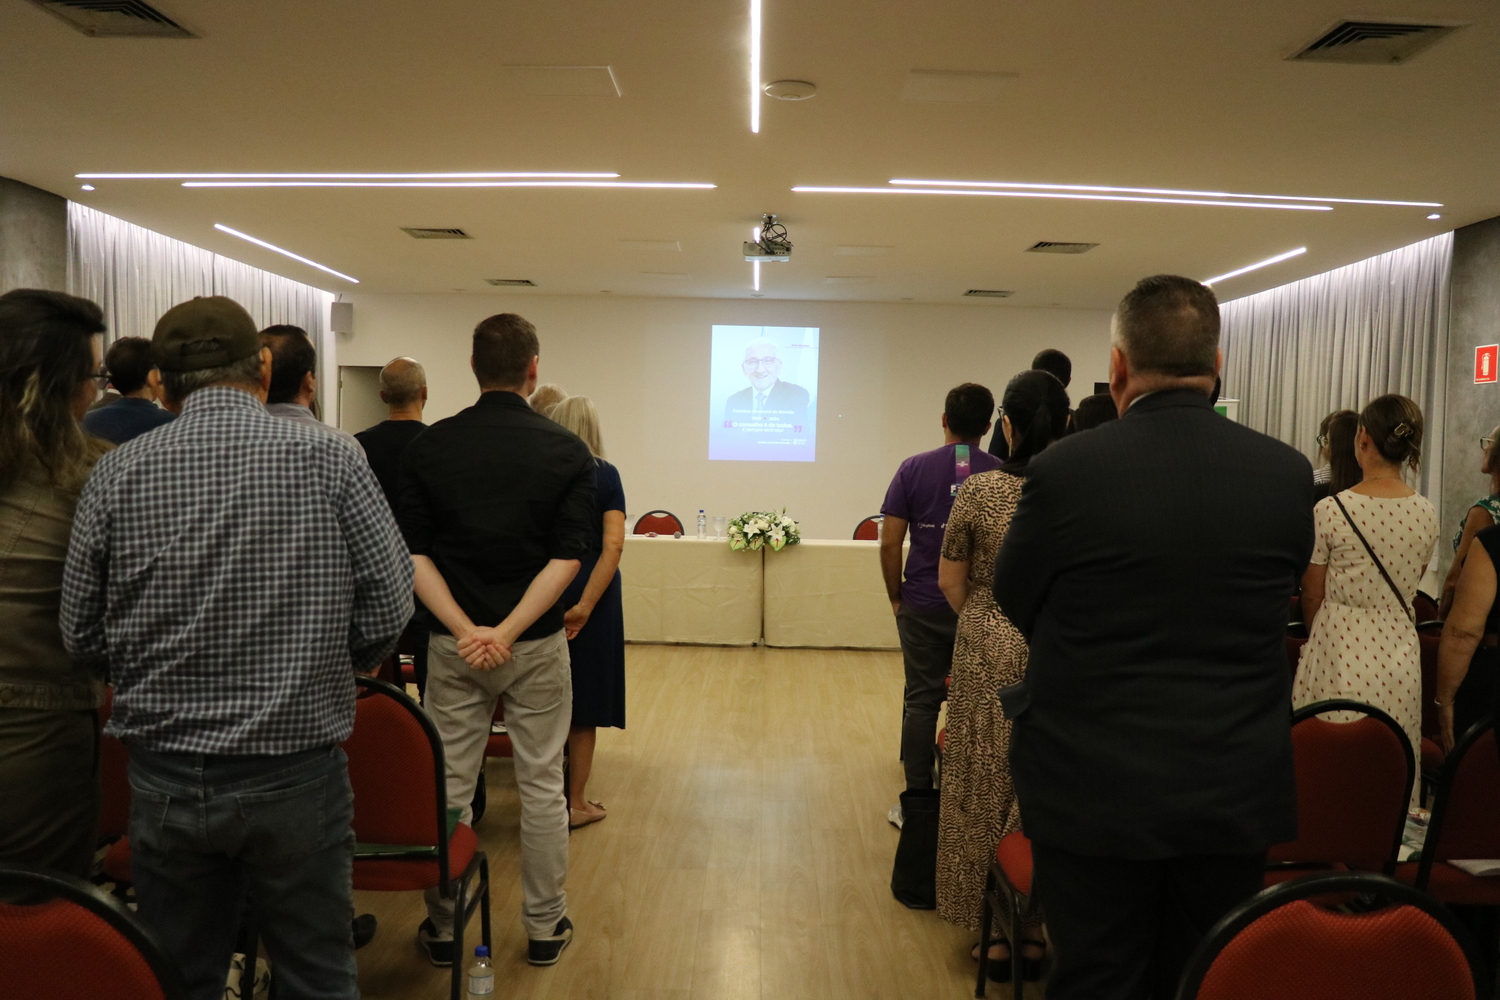 No auditório, os participantes do evento se colocam de pé, respeitam um minuto de silêncio em memória do ex-presidente do CFMV, cuja imagem aparece no telão ao fundo.